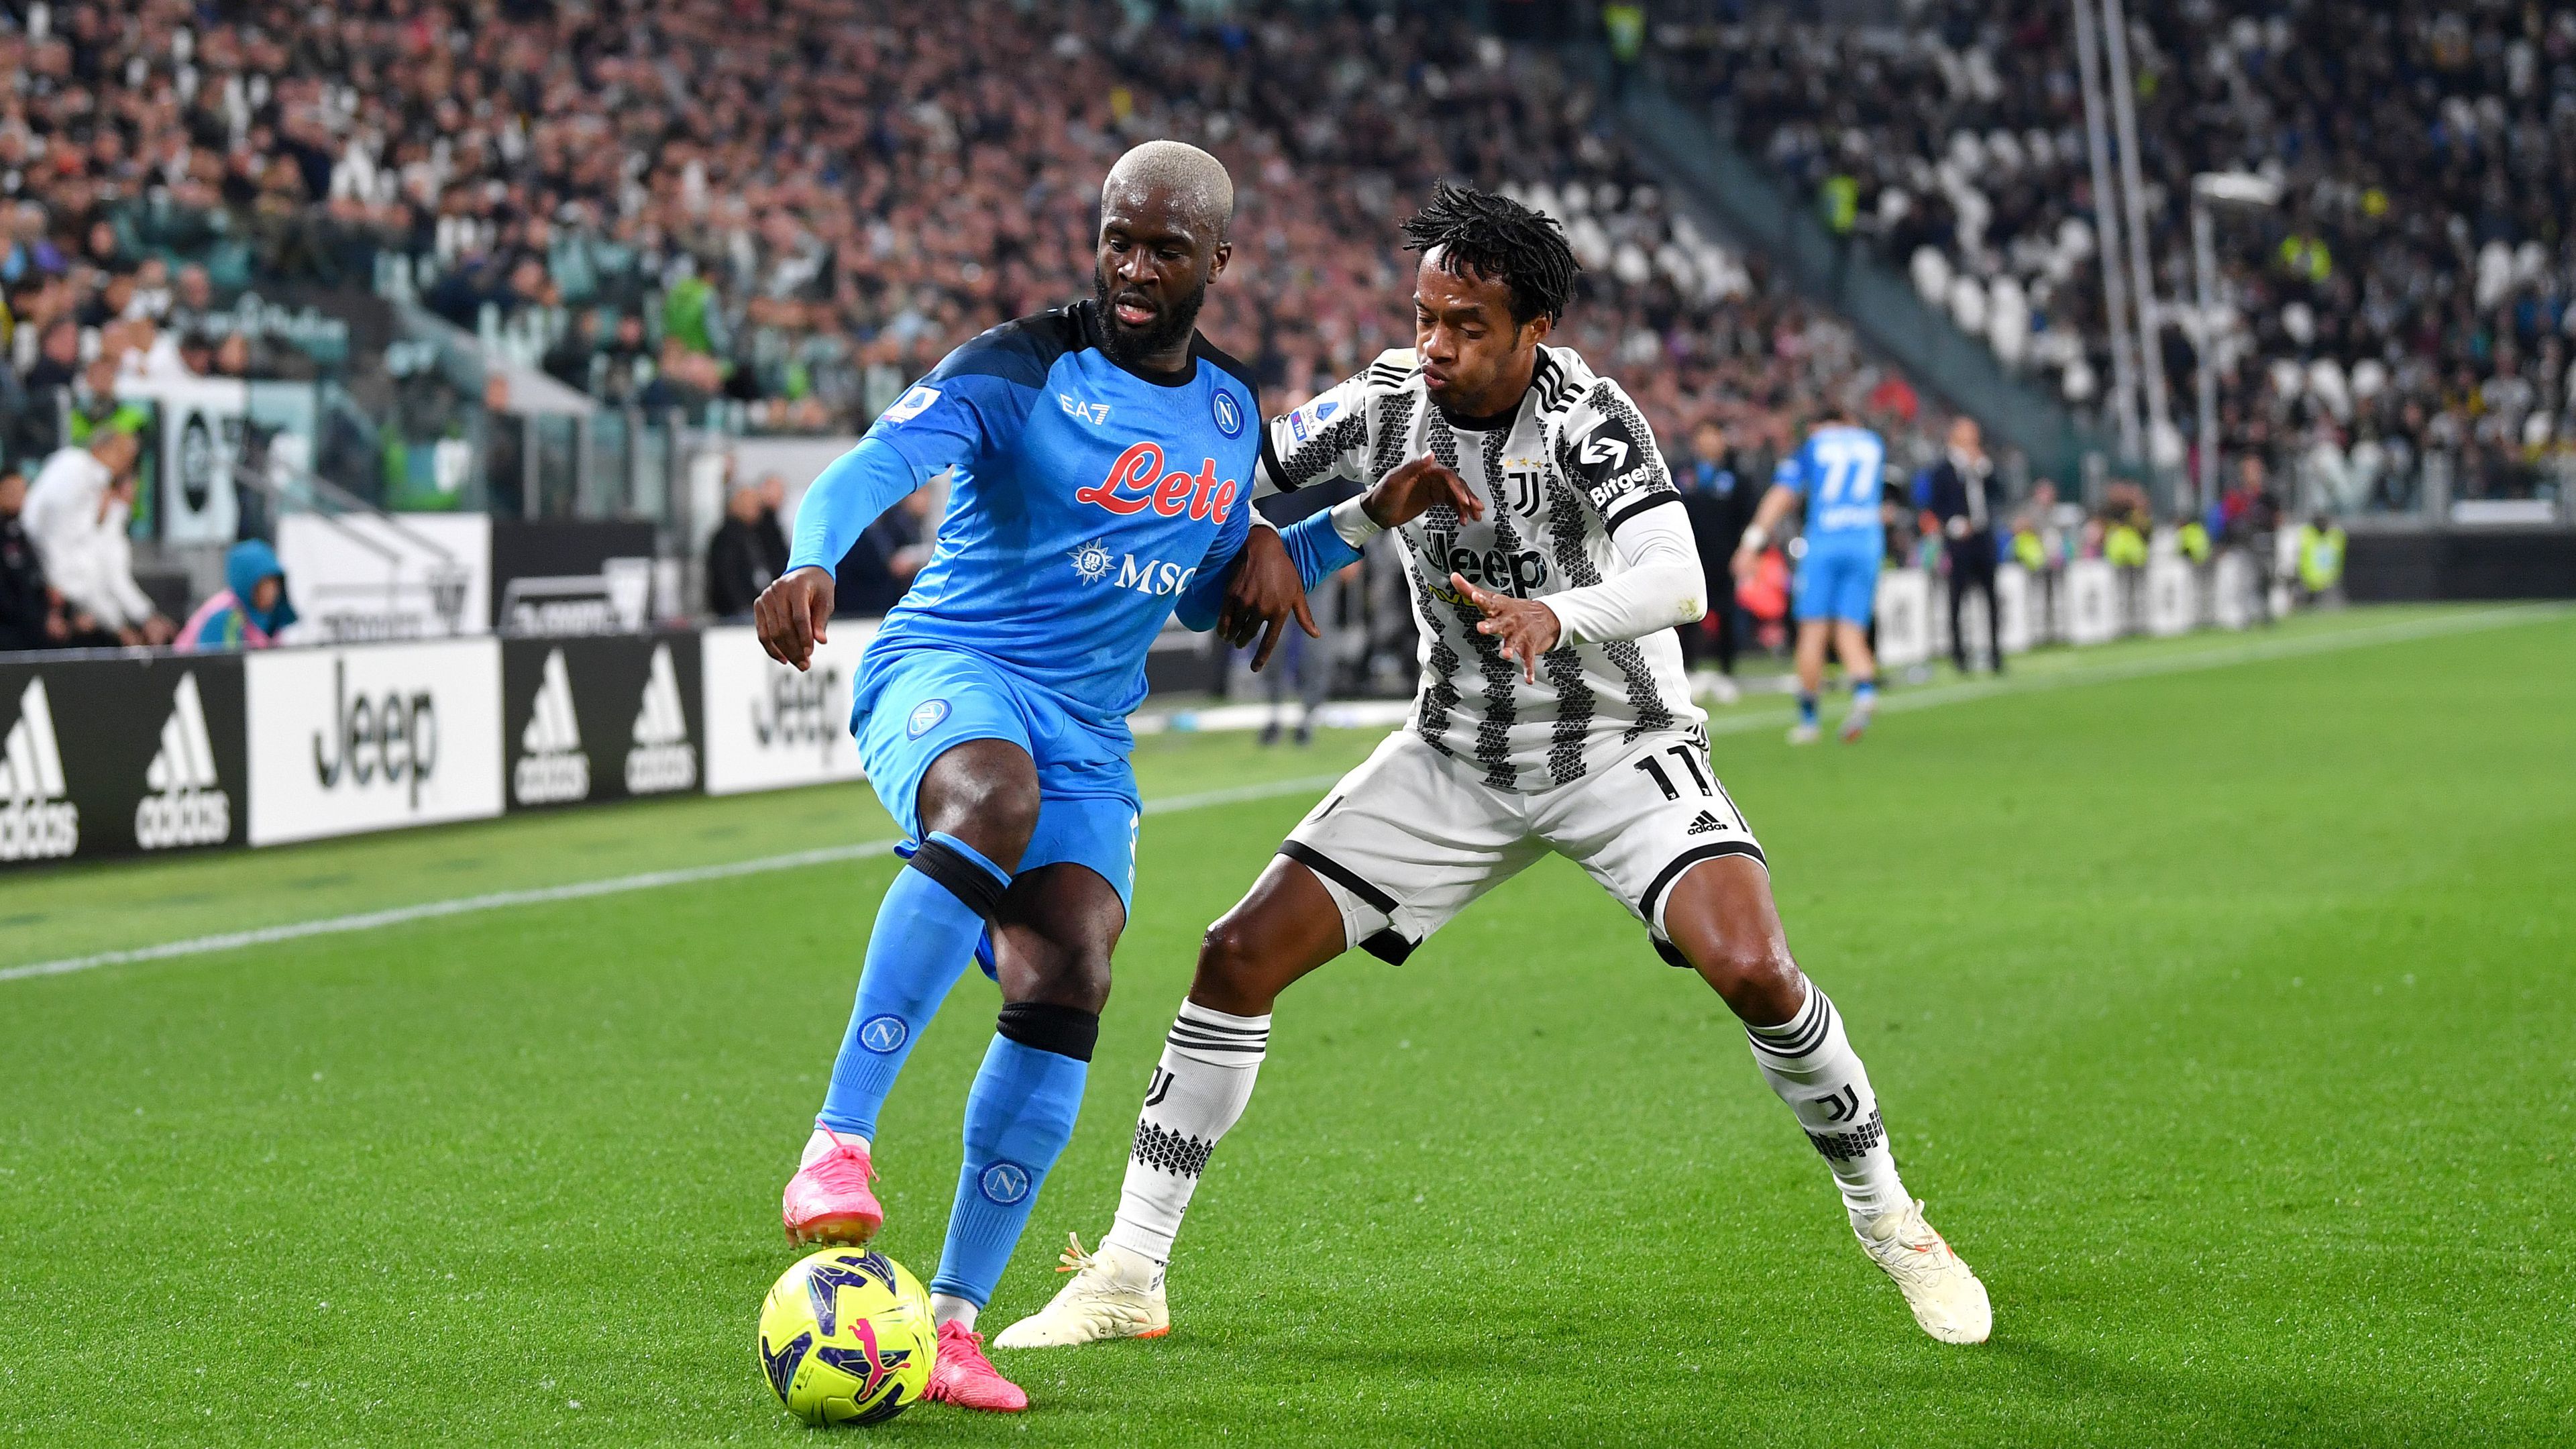 A Napoli felállt a BL-pofonból, a 93. percben szerzett góllal sokkolta a Juventust